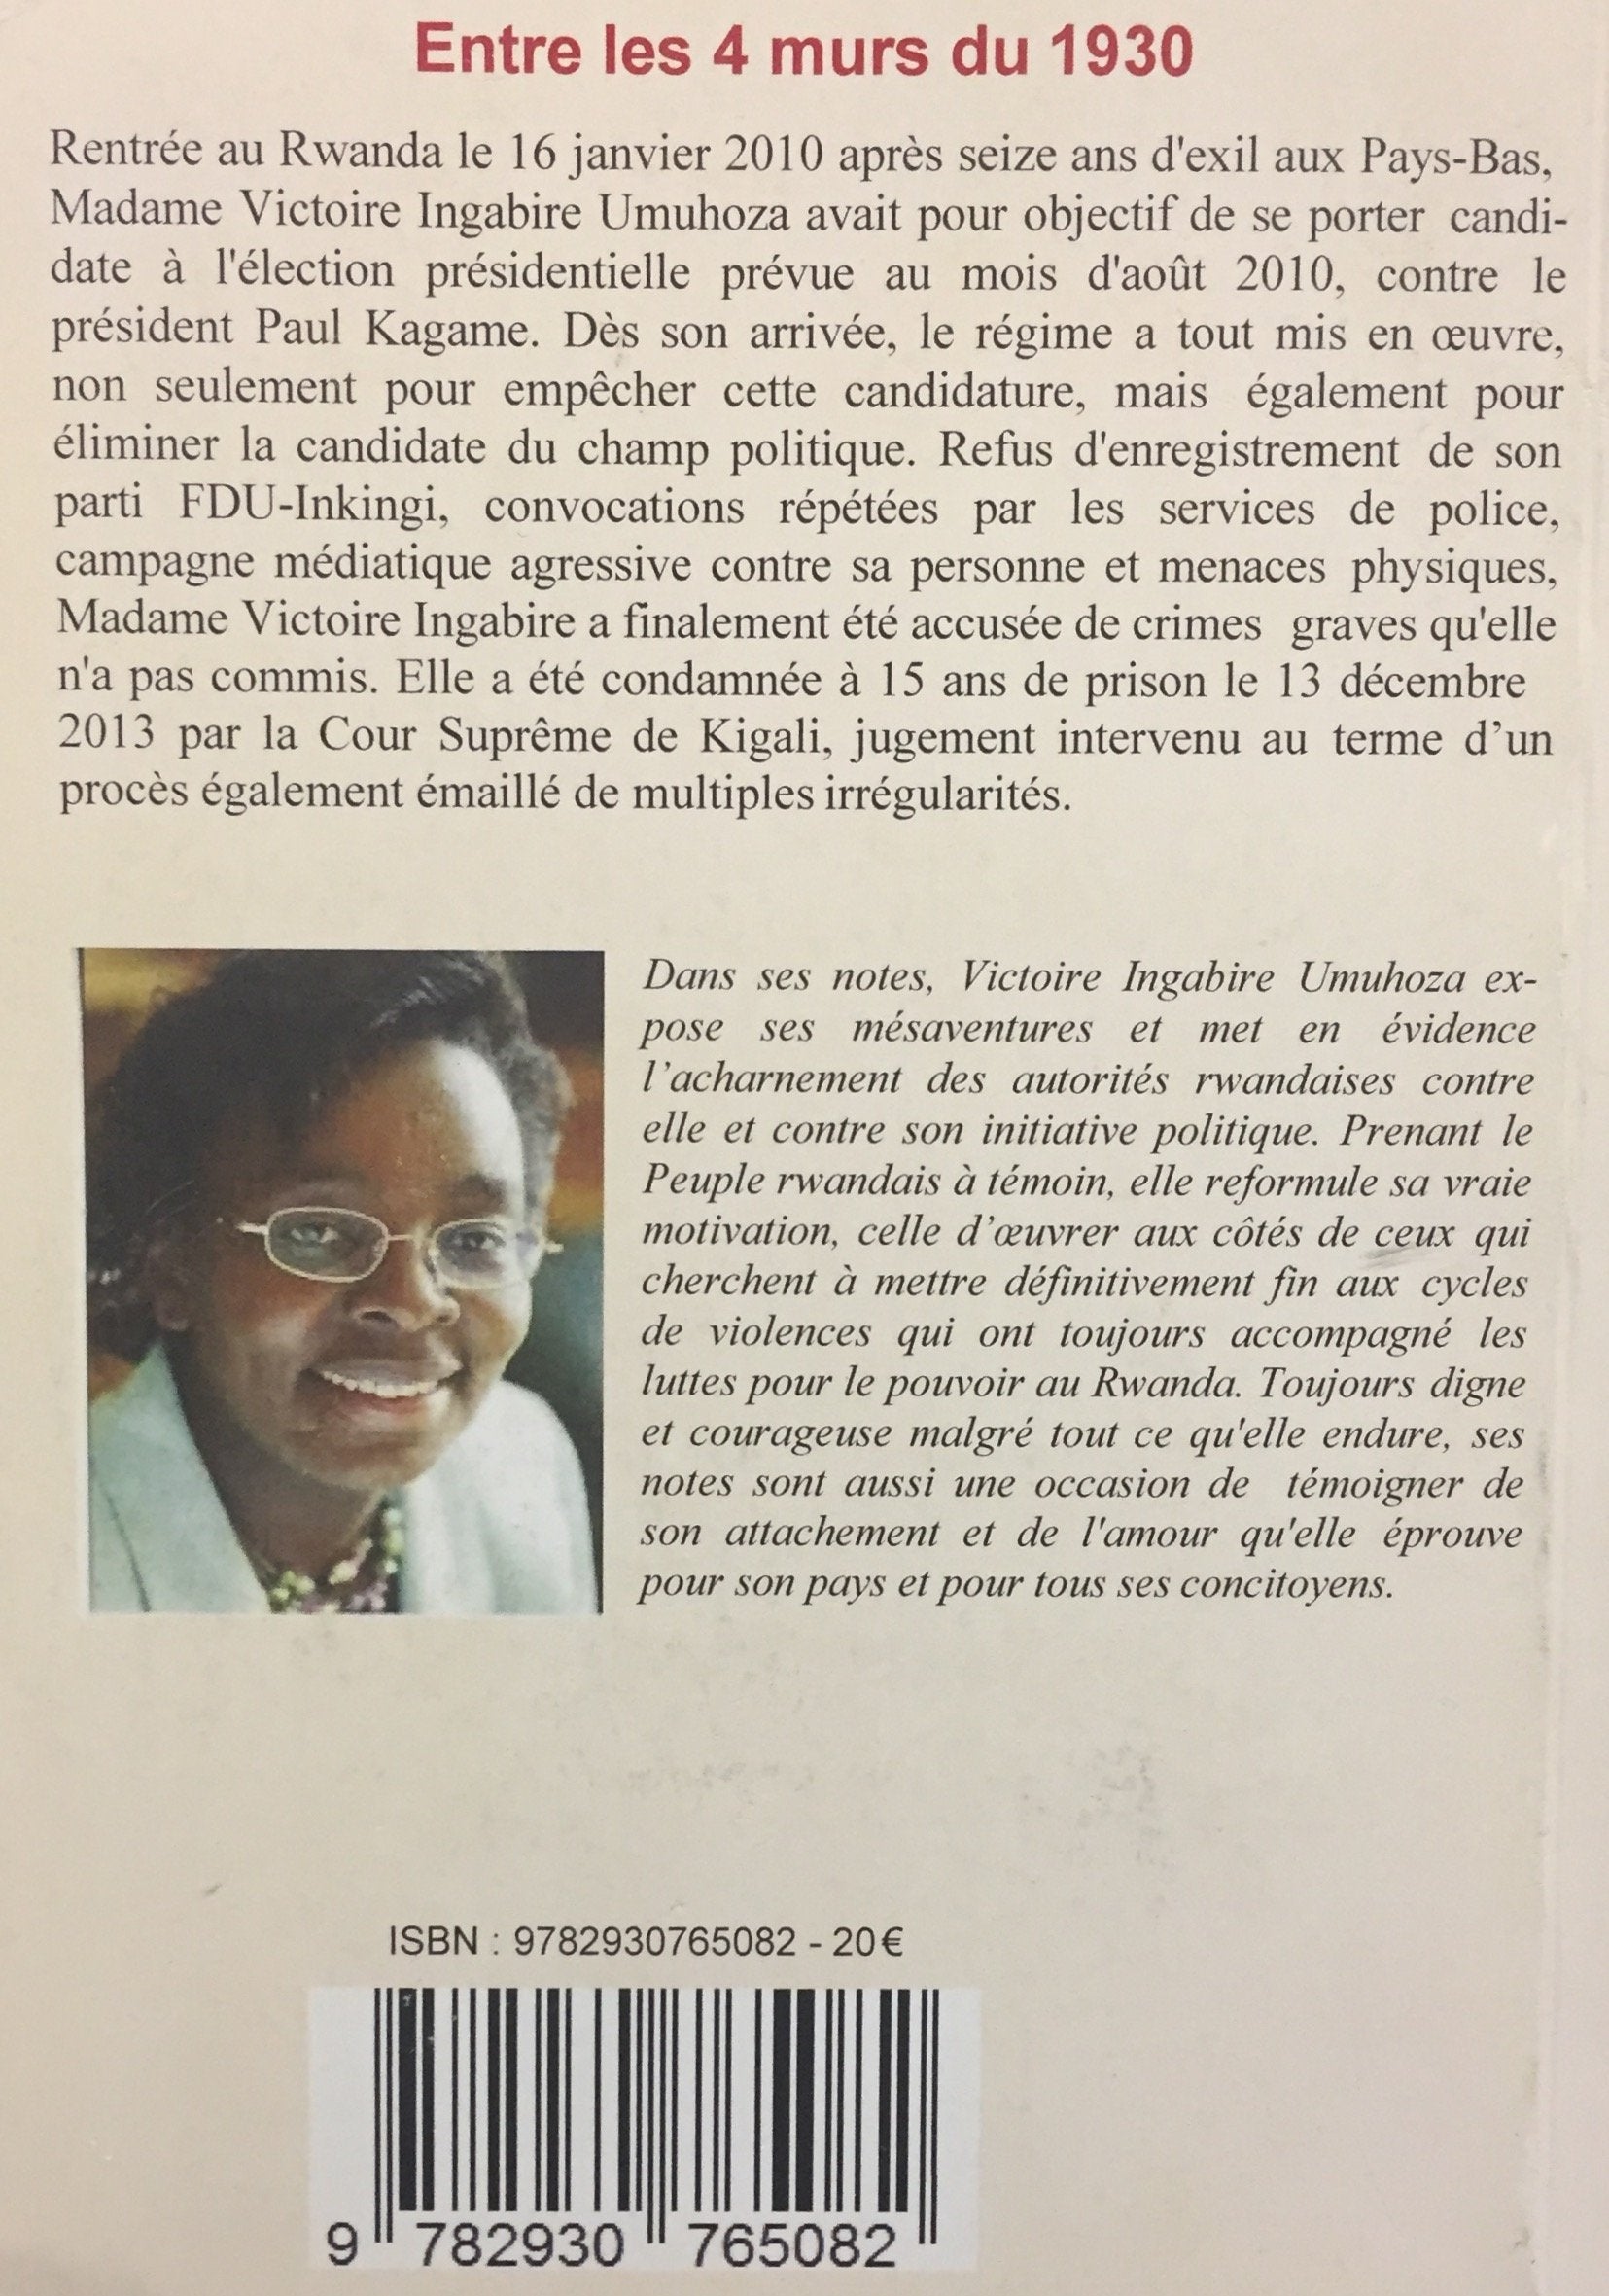 Entre les 4 murs du 1930 : Notes de Mme Victoire Ingabire Umuhoca 2010-2013 (Victoire Ingabire Umuhoza)